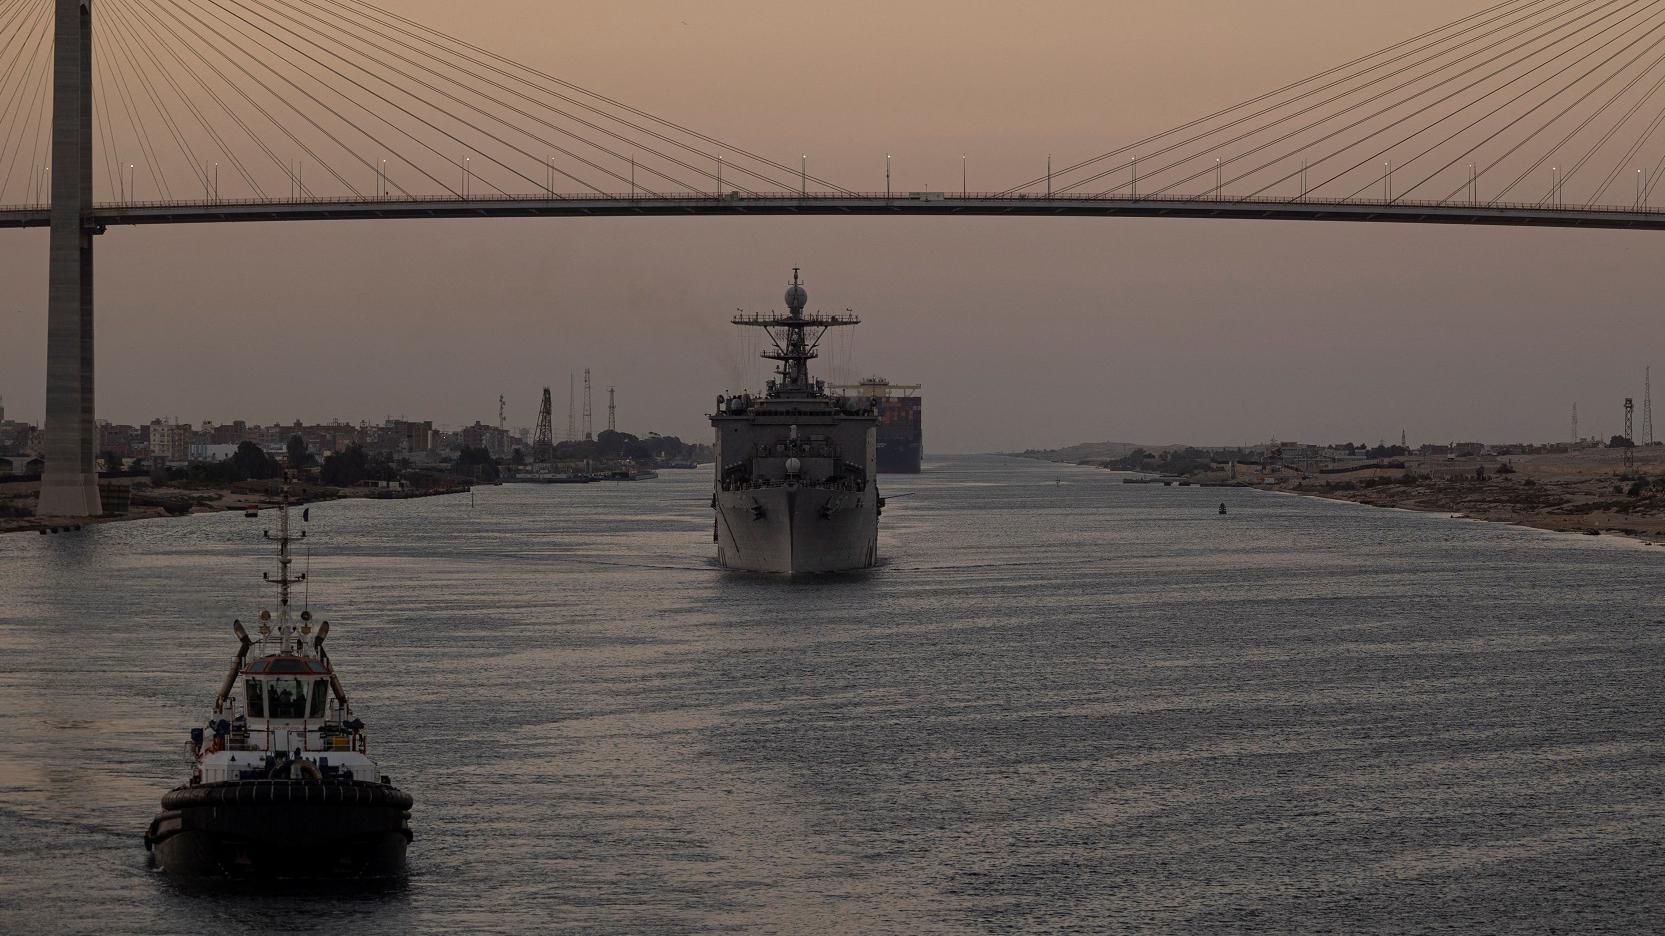 السفينة الأمريكية يو إس إس كارتر هول تعبر قناة السويس.